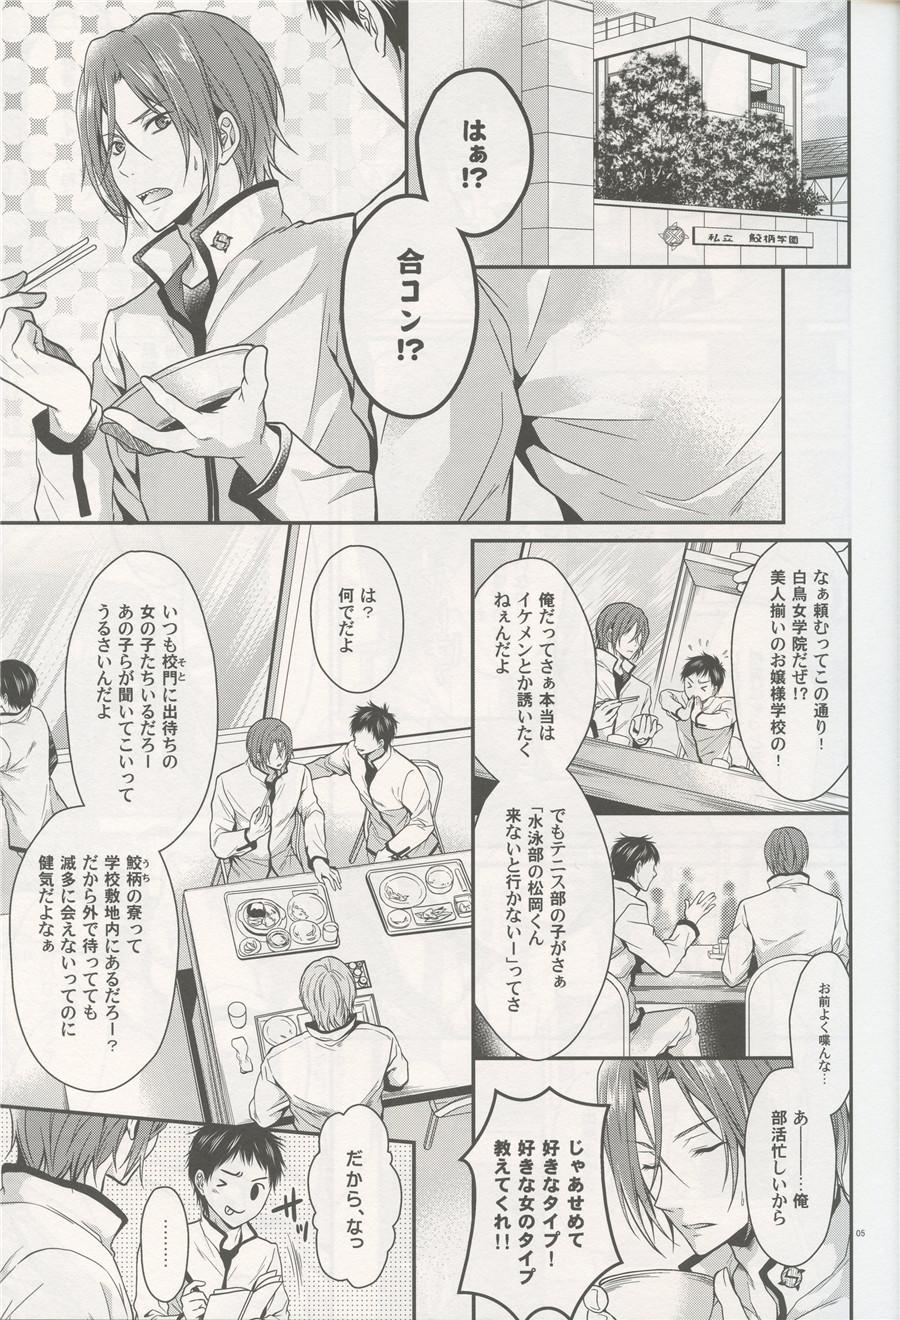 Petite Teen Aitsu no Yome Skill ga Takasugirundaga. - Free Naked Sex - Page 4